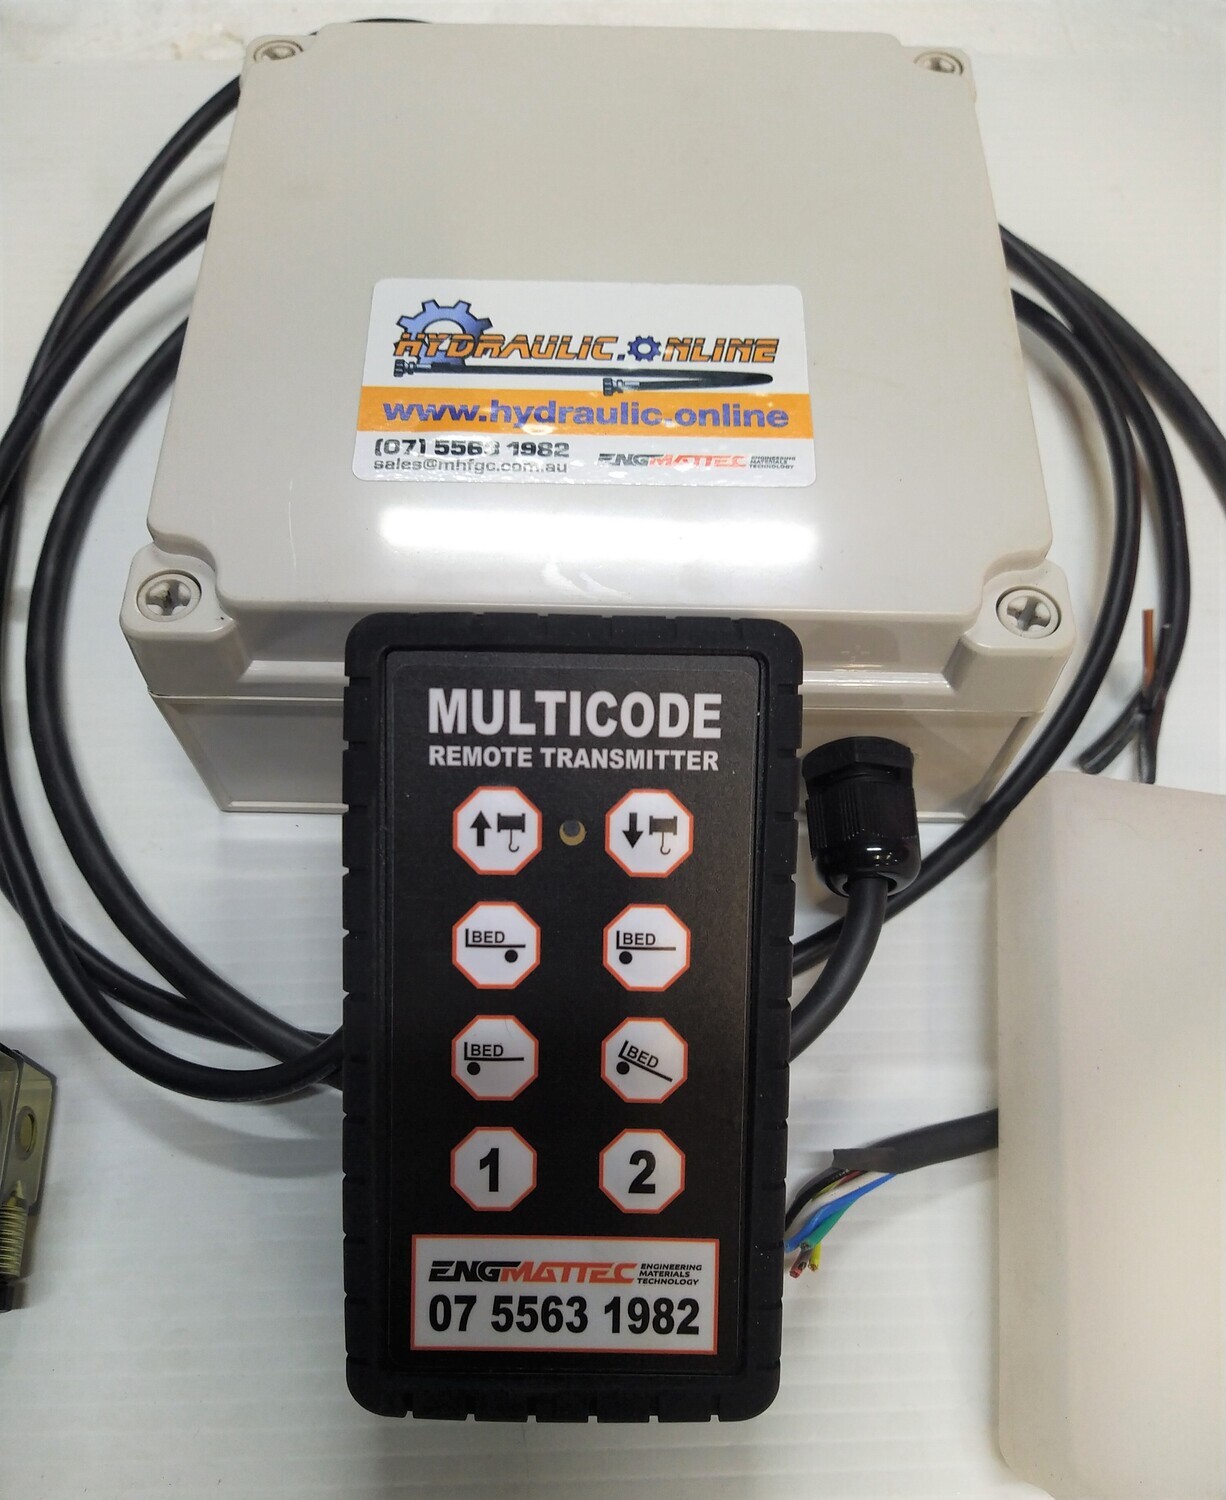 8 Button Radio Remote Control Kit Multi-Purpose